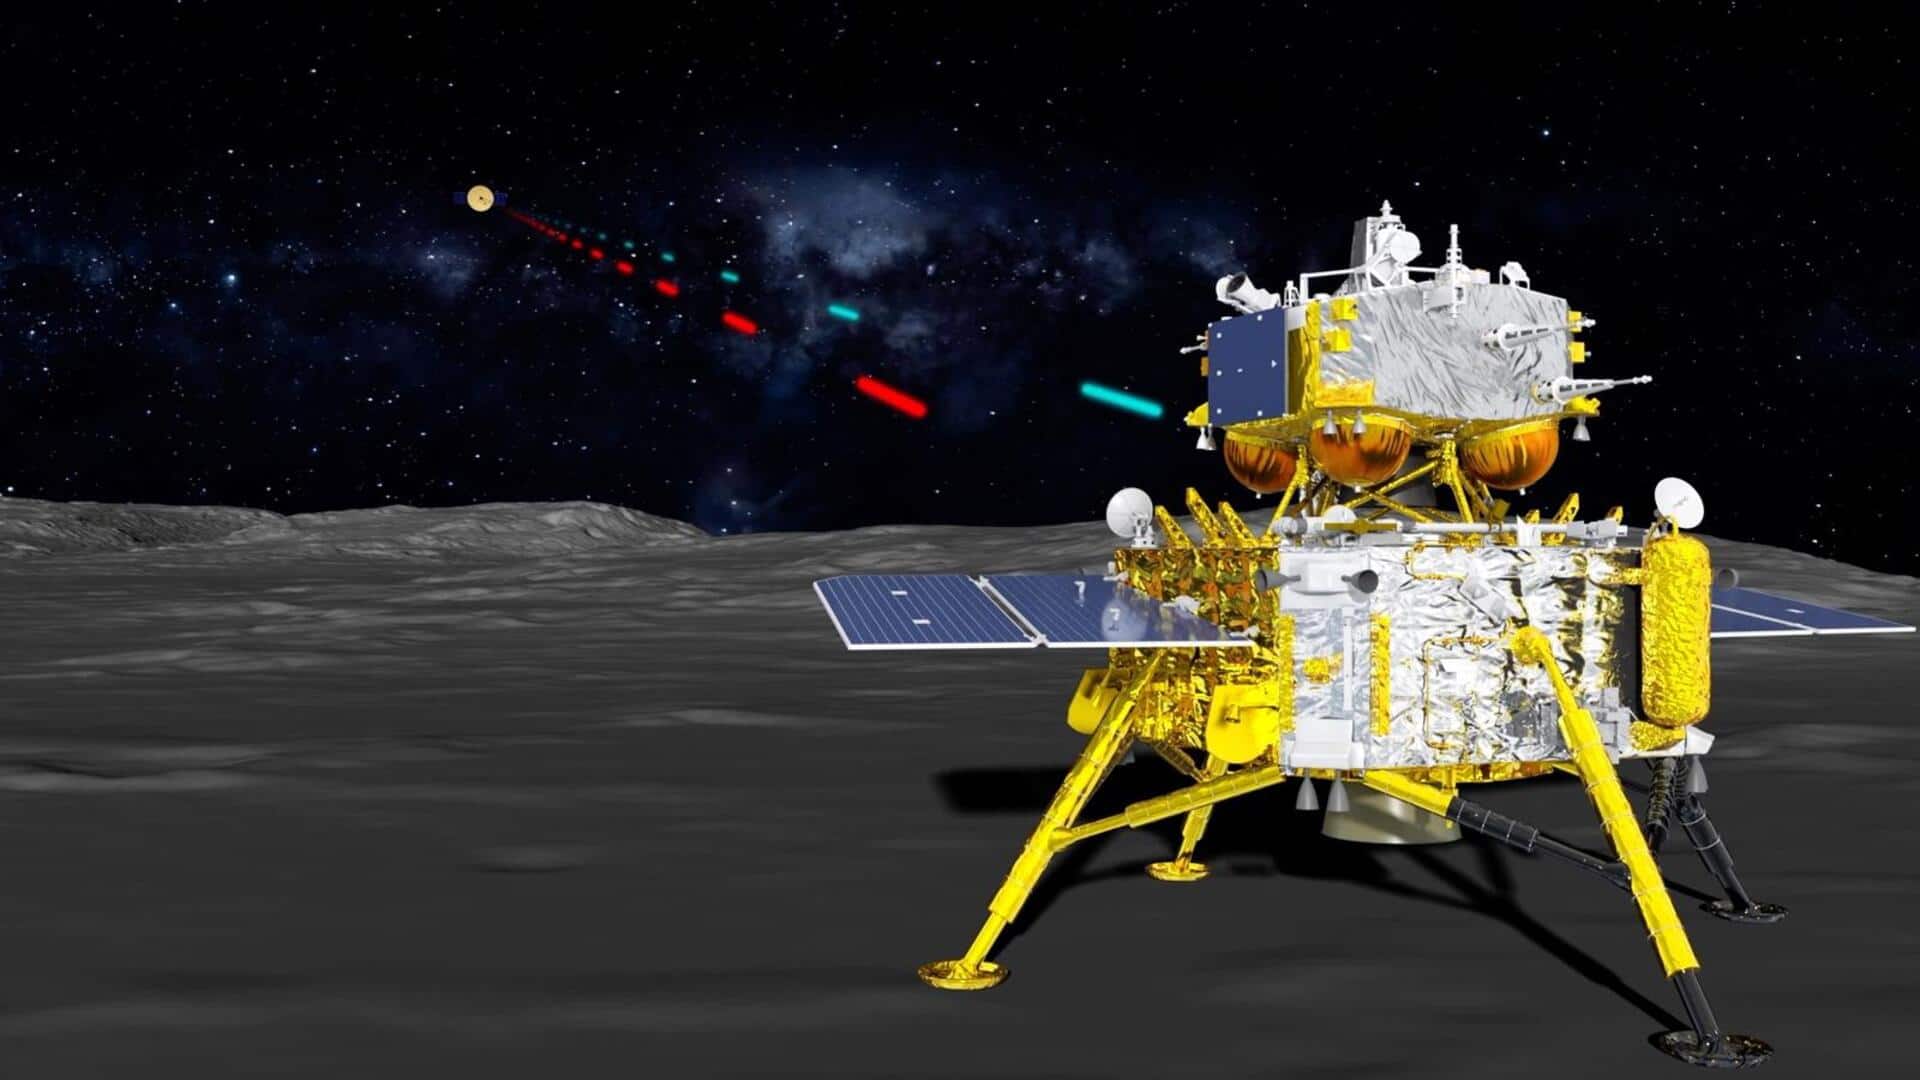 चीन का चांग ई-6 अंतरिक्ष यान चंद्रमा पर क्या करेगा काम?